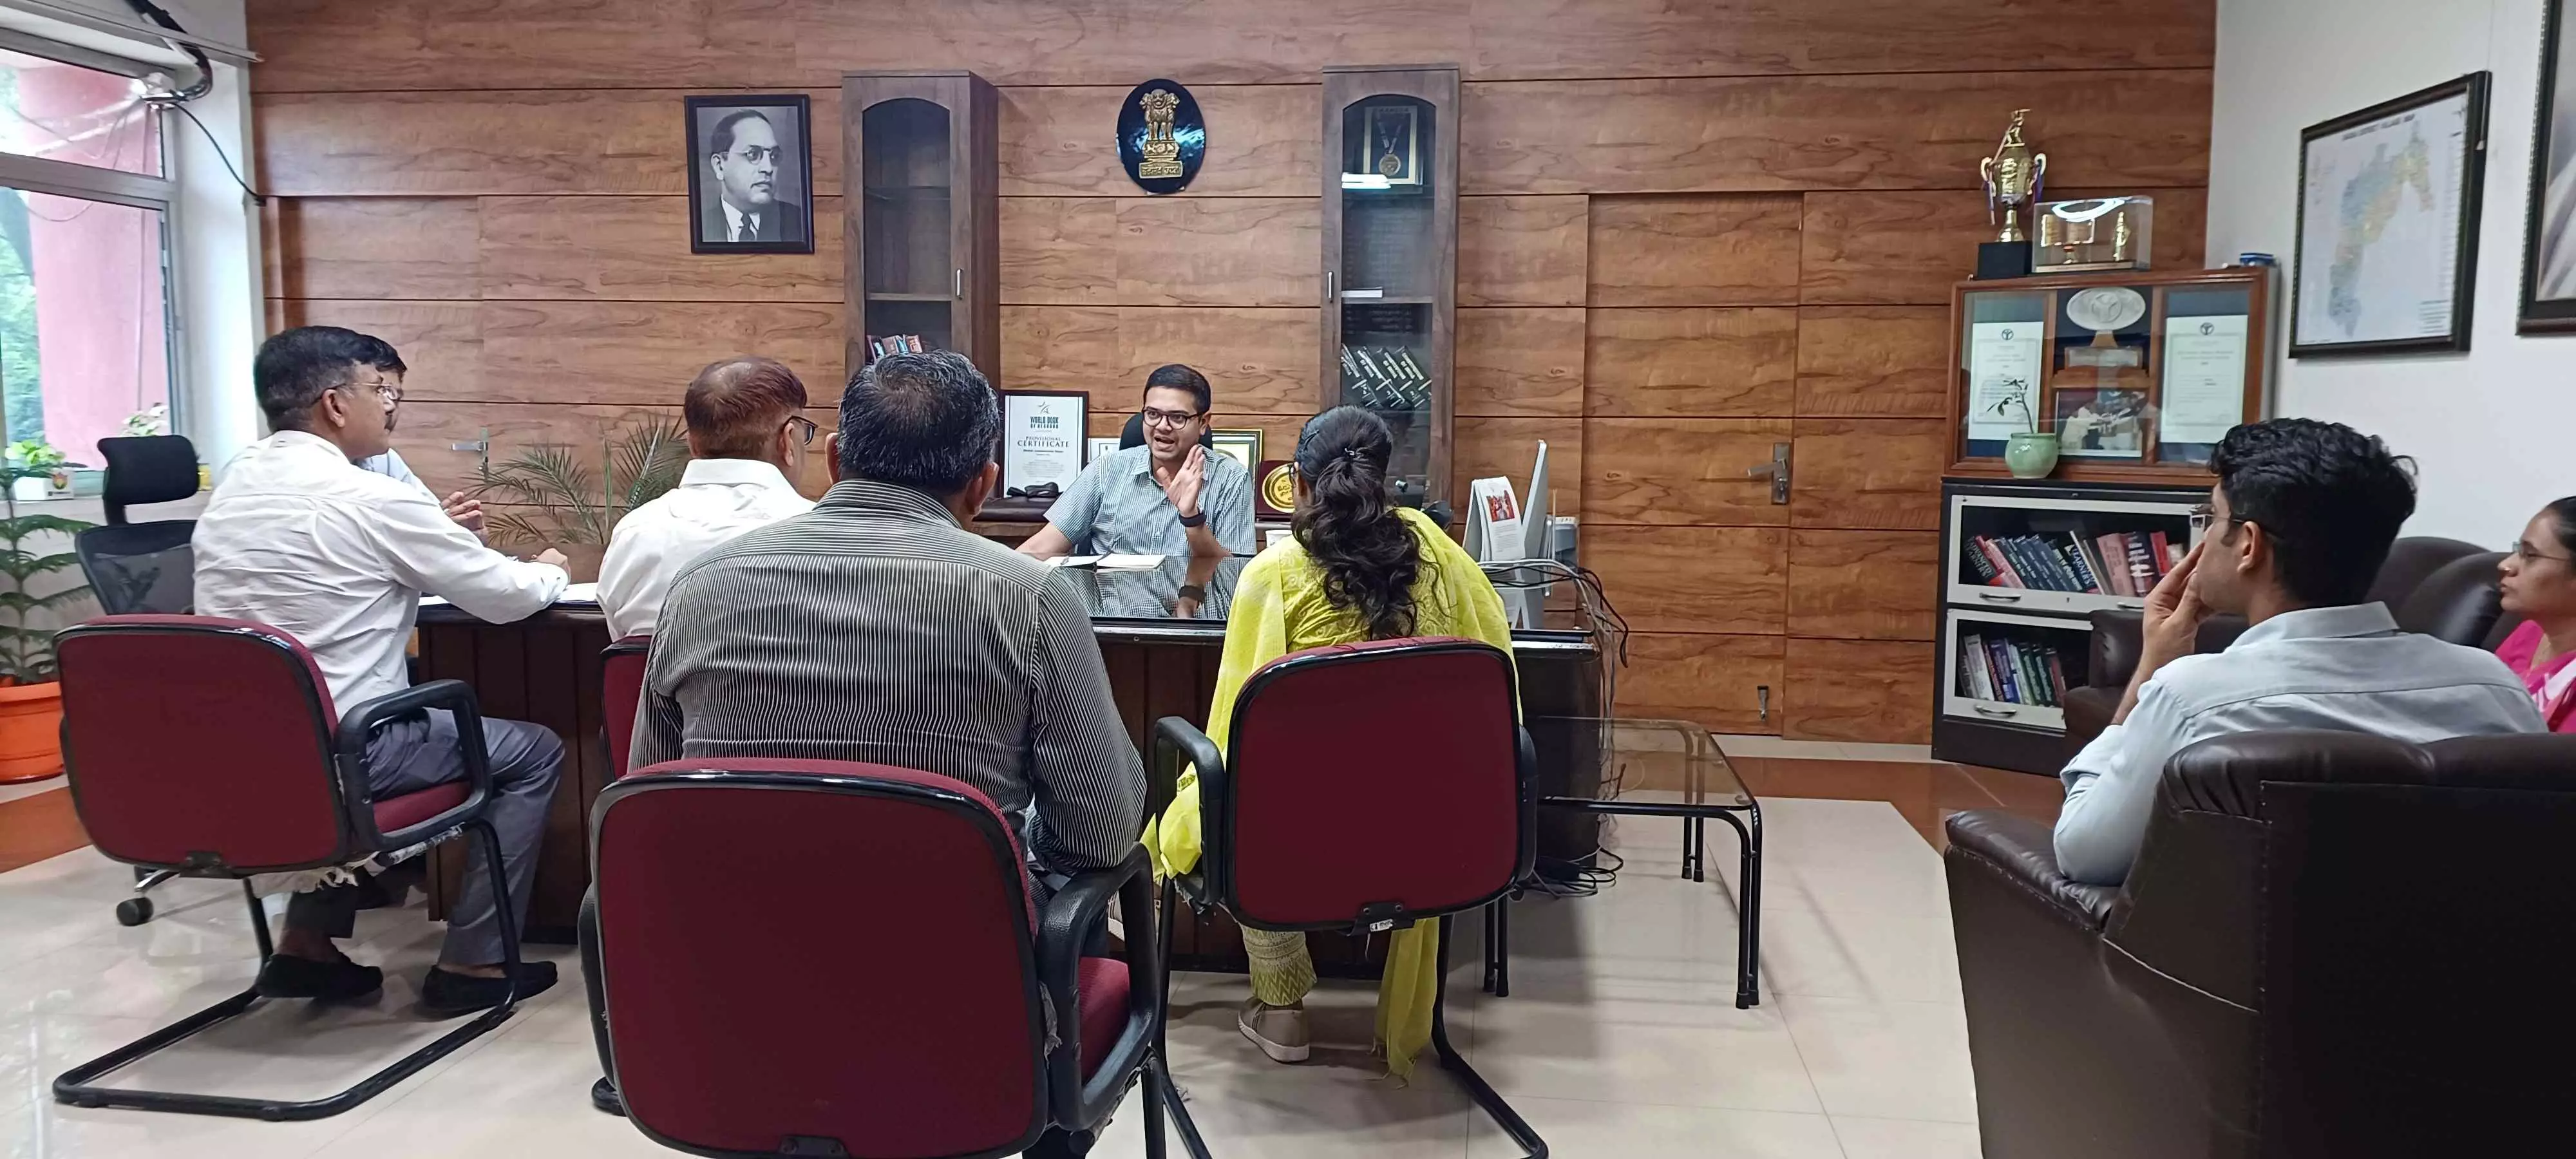 CM भजनलाल शर्मा के जिले में प्रस्तावित दौरे की तैयारियों की समीक्षा बैठक का हुआ आयोजन